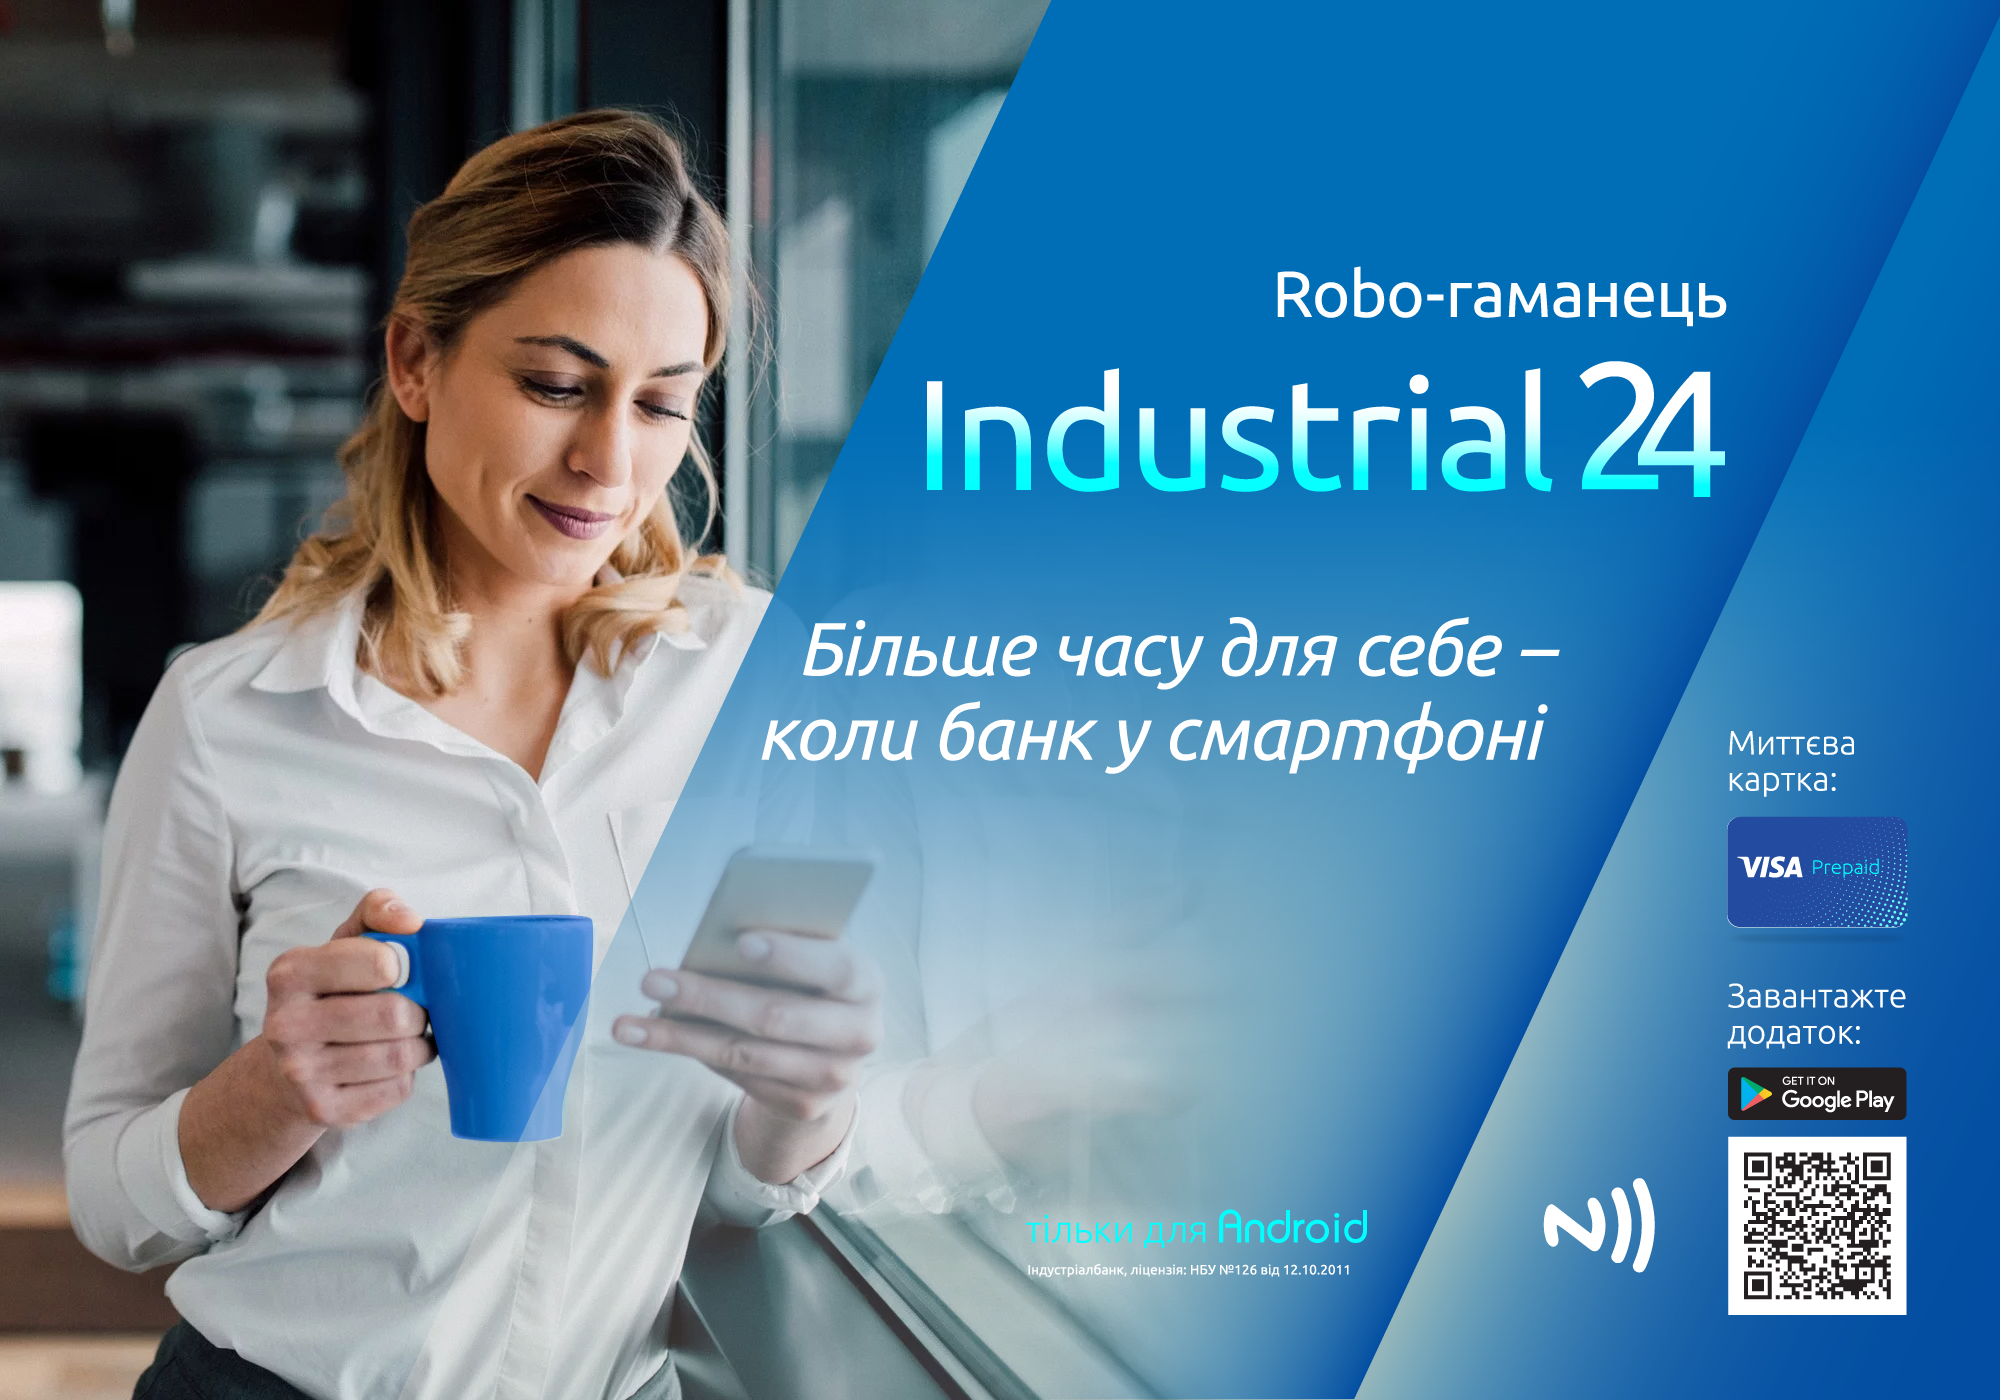 Industrial24 NFC Prepaid